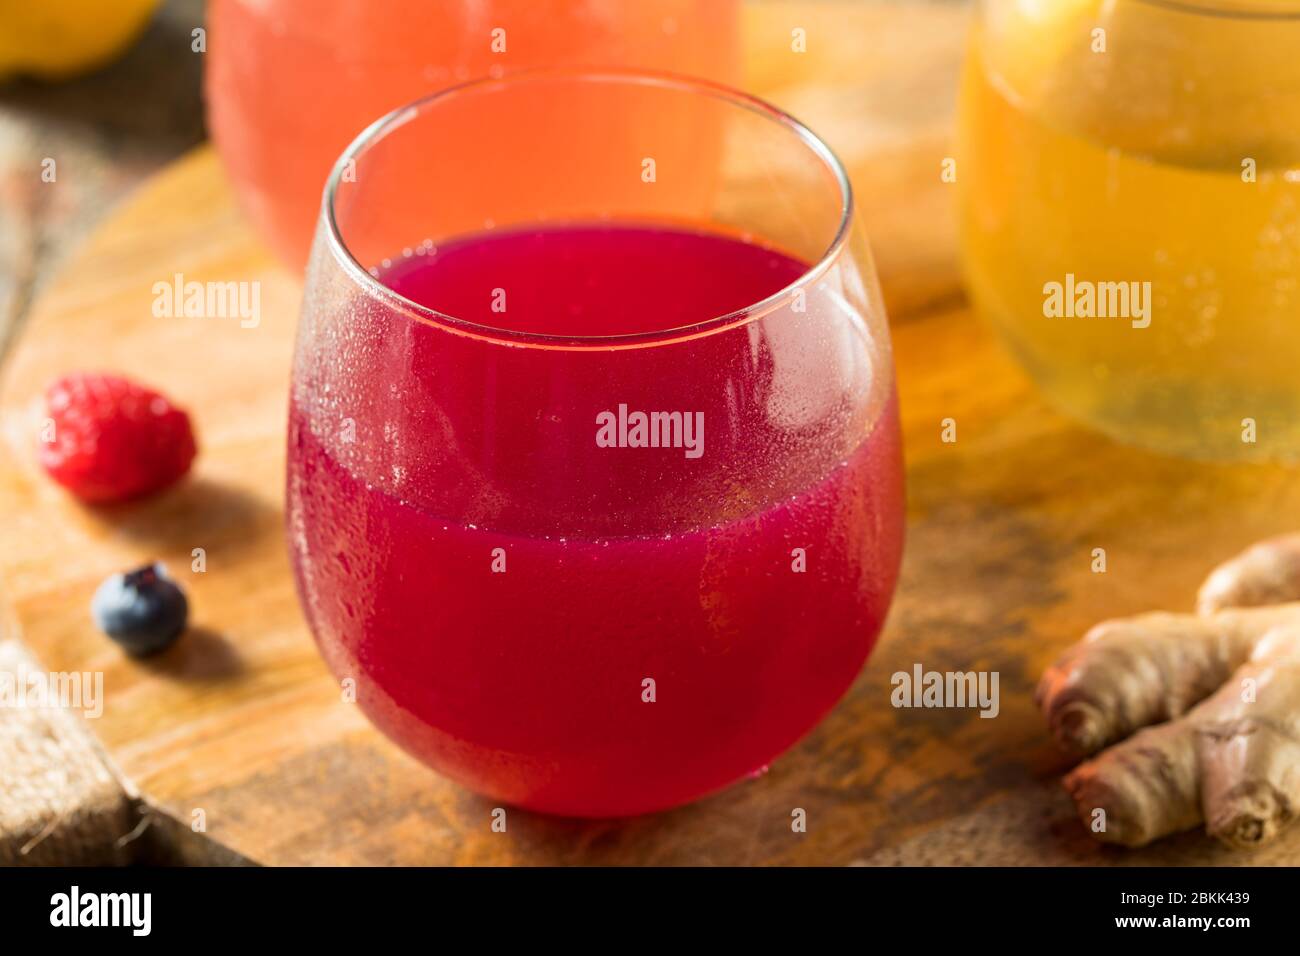 Boozy Alcoholic Hard Kombucha Cider with Fruit Stock Photo